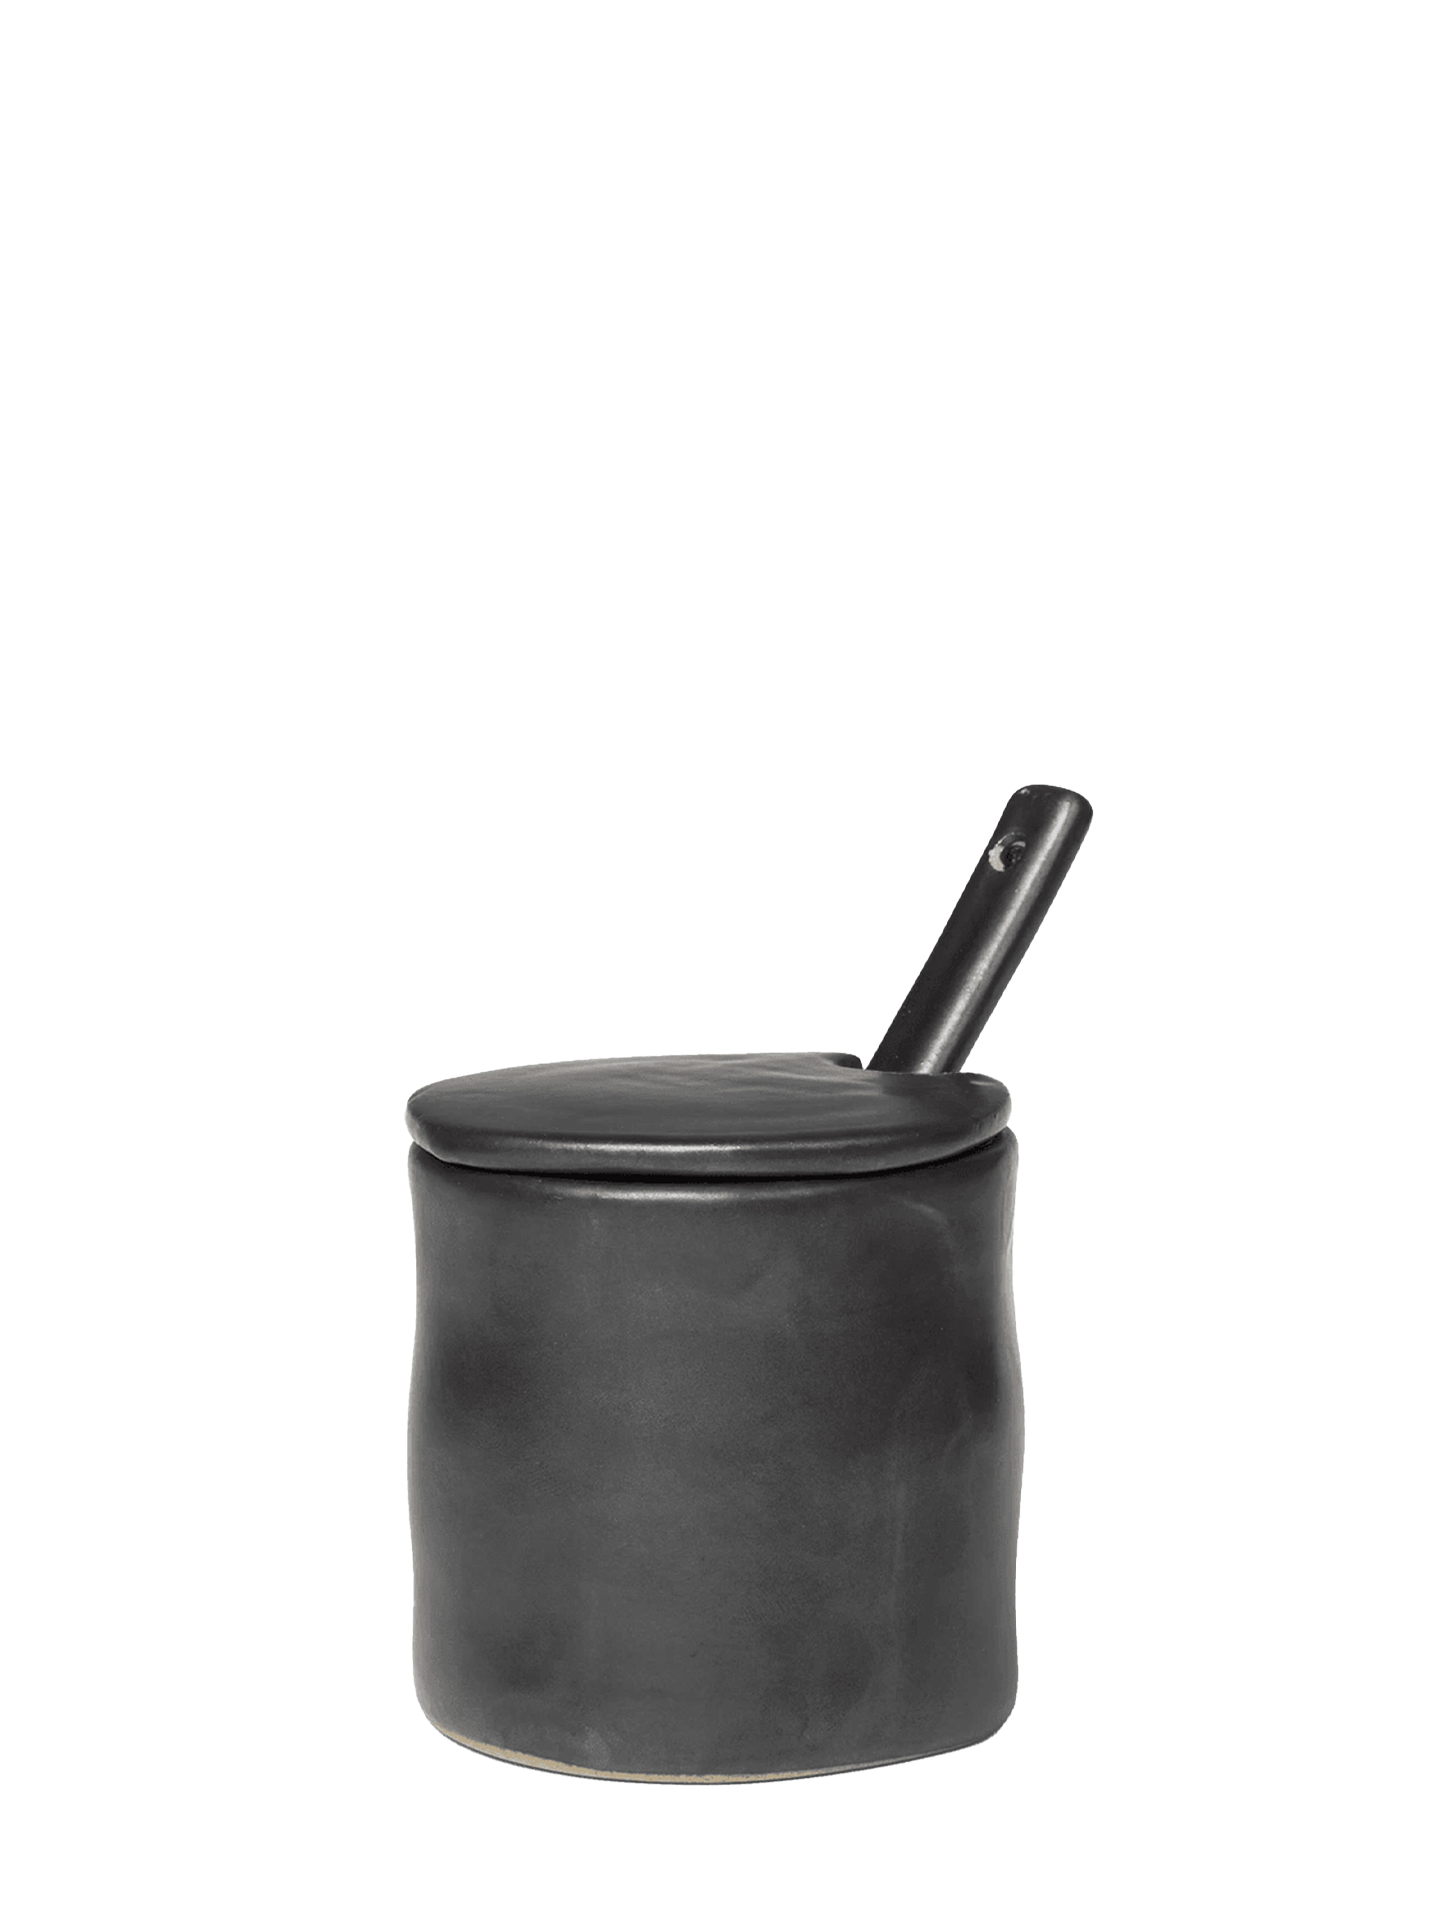 Flow Jar with spoon, Black